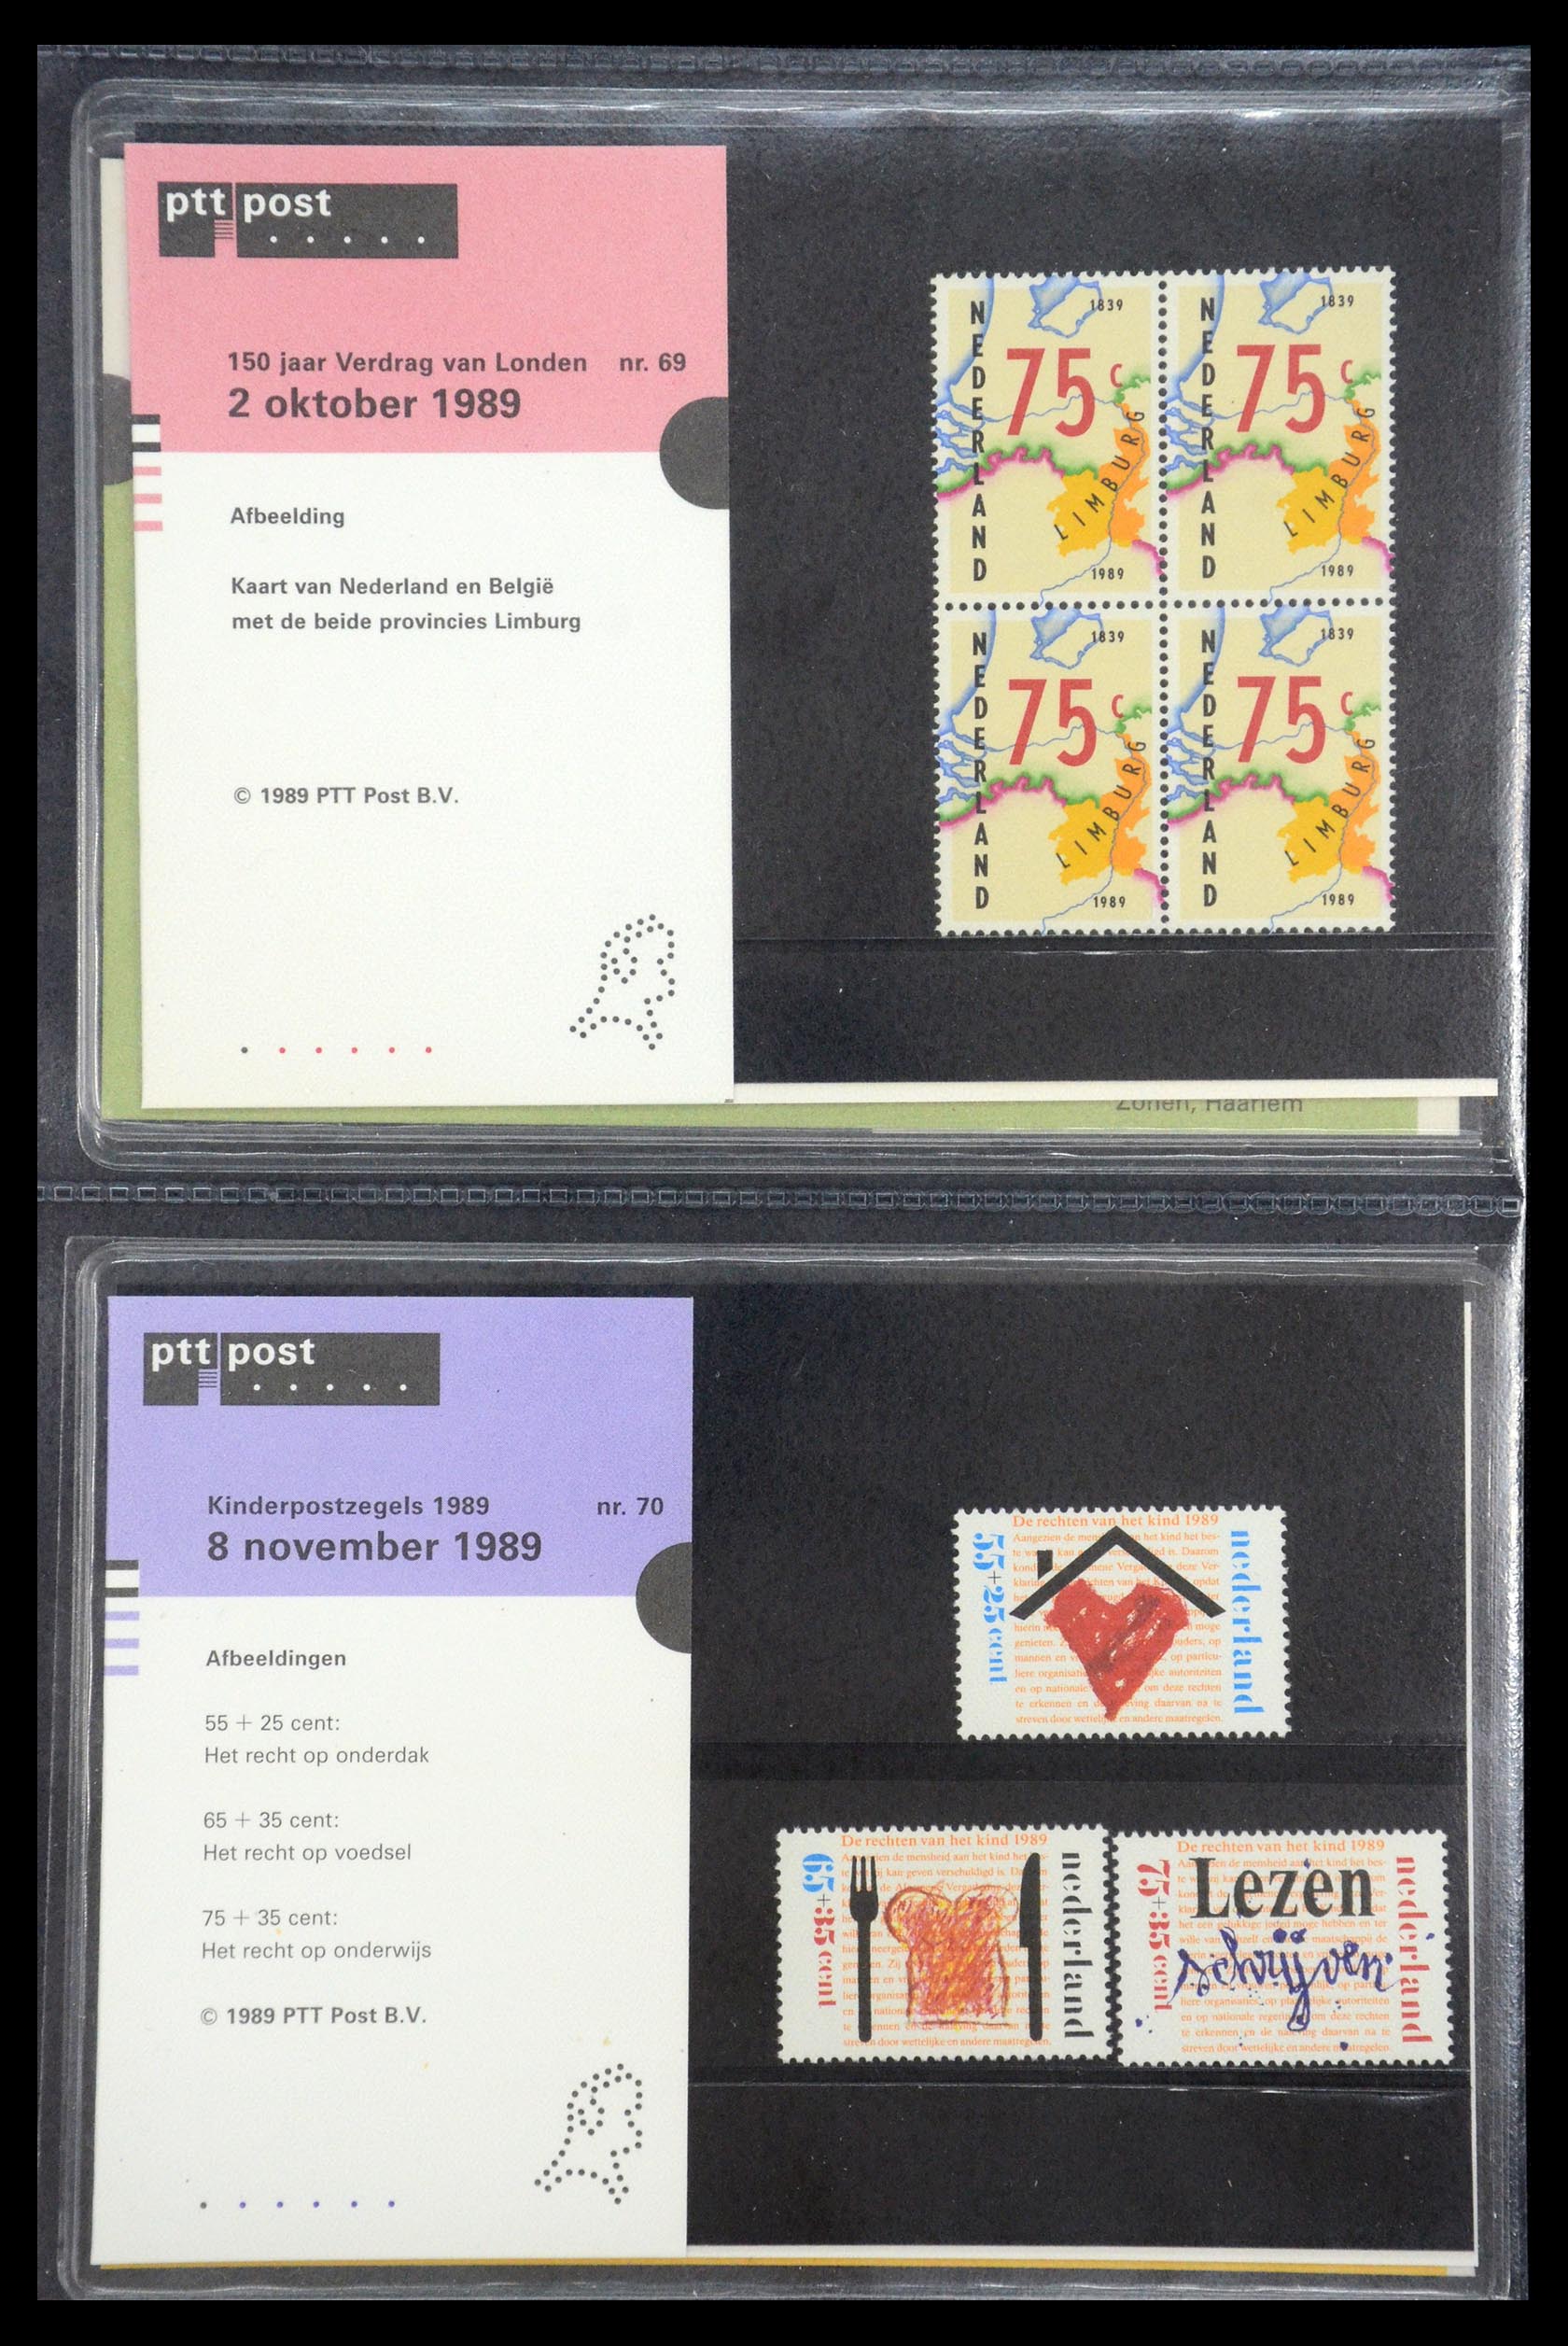 35187 035 - Stamp Collection 35187 Netherlands PTT presentation packs 1982-2019!